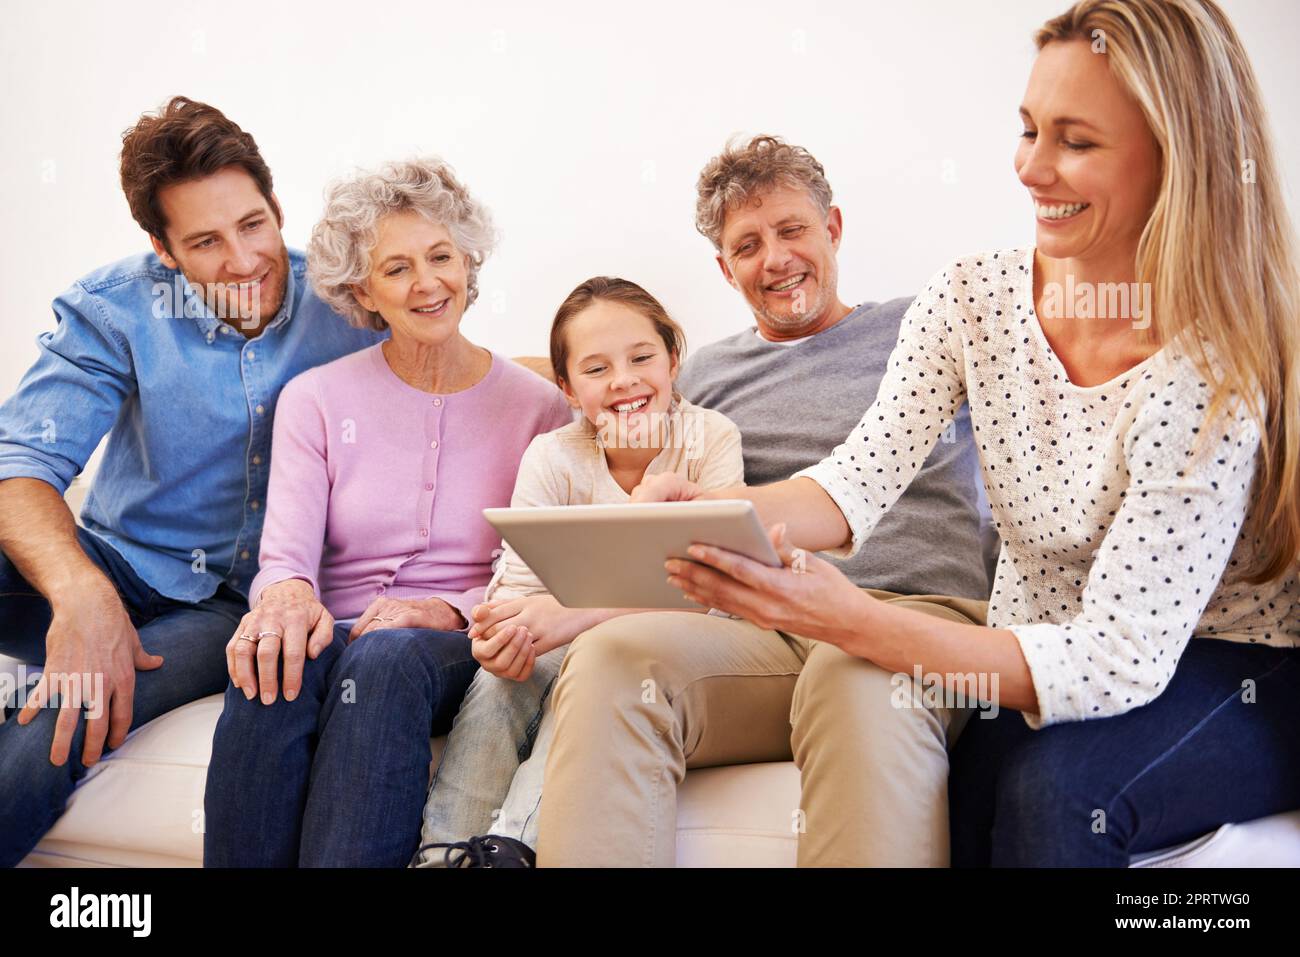 Happy Times Together. Eine glückliche Familie mit mehreren Generationen, die zusammen ein Tablet nutzt. Stockfoto